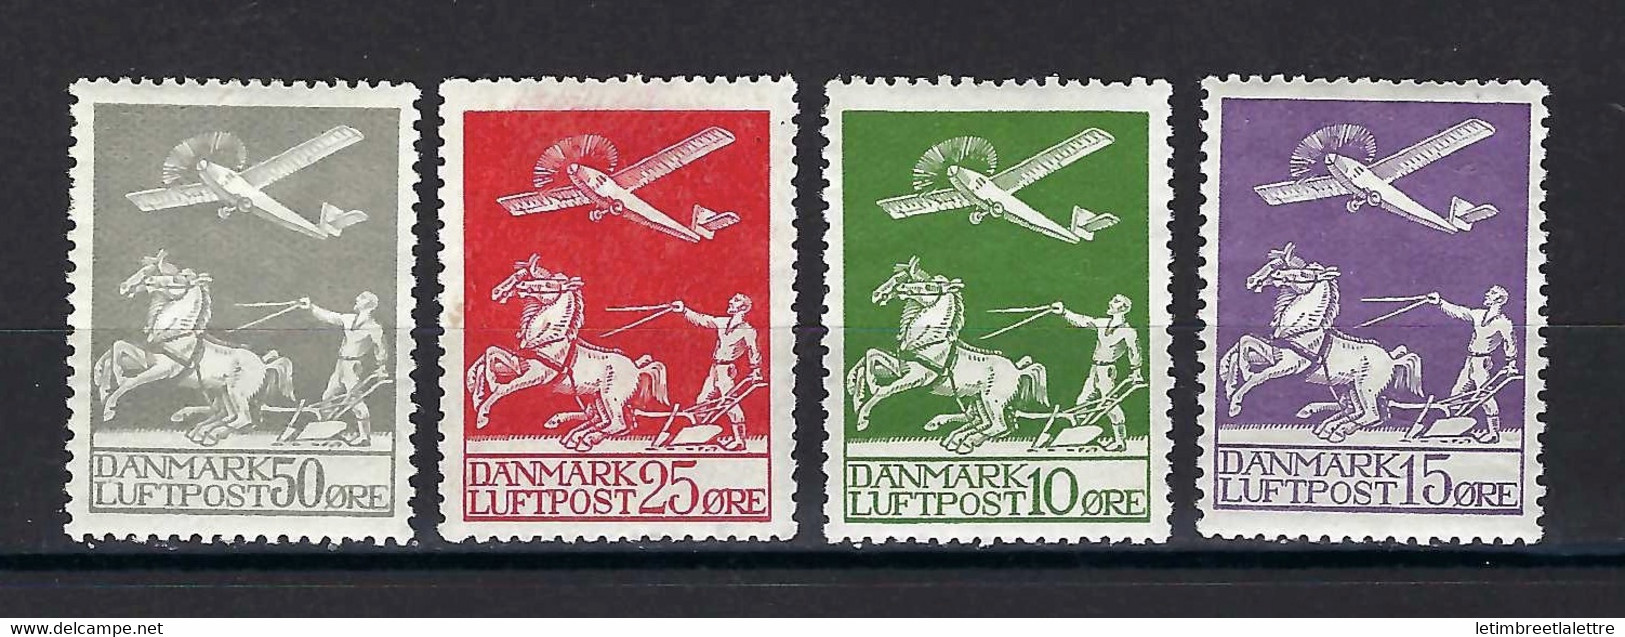 ⭐ Danemark - Poste Aérienne - YT N° 1 à 4 *  - Neuf Avec Charnière - 1925 / 1930 ⭐ - Airmail